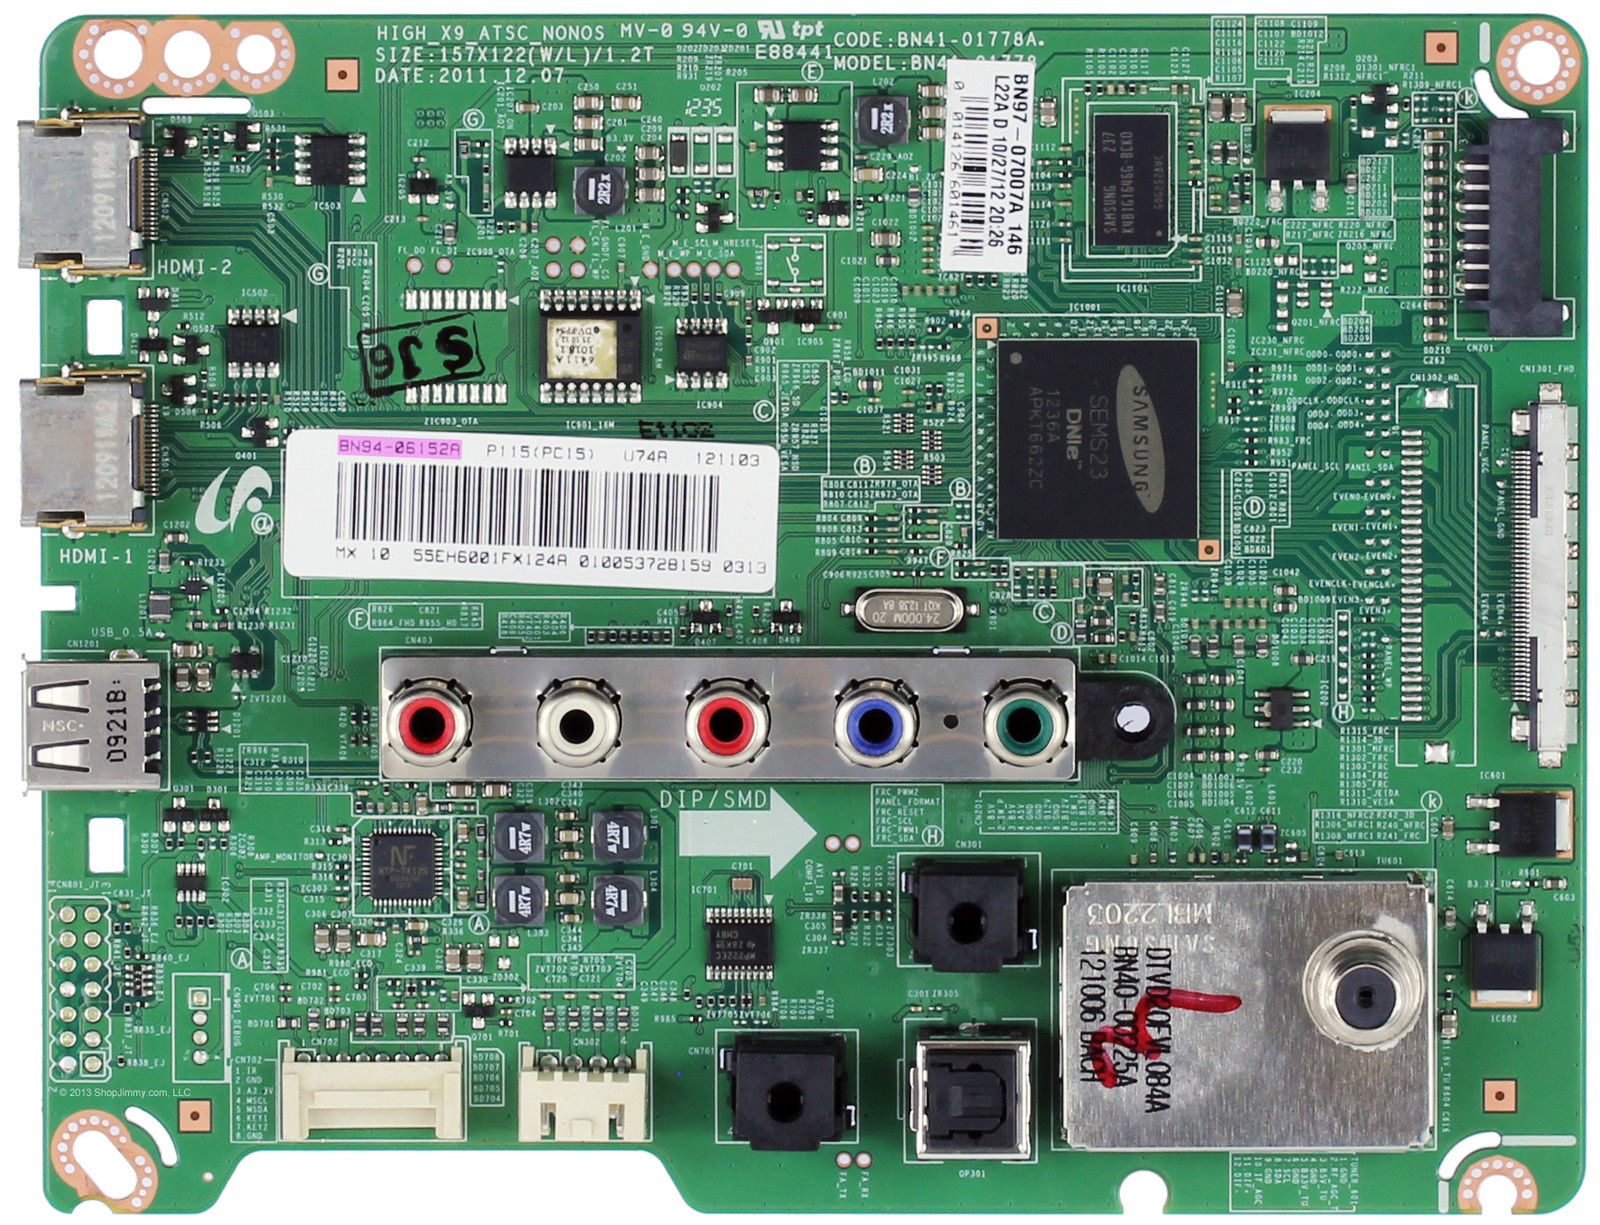 Samsung BN94-06152A Main Board for UN55EH6001FXZA - Click Image to Close